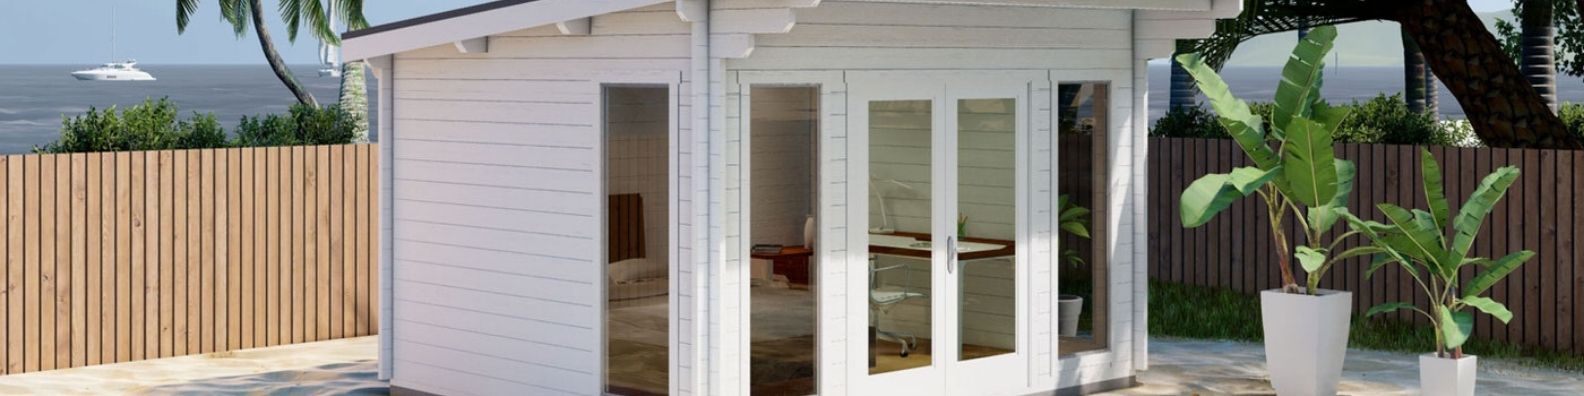 pool house or weekender cabin